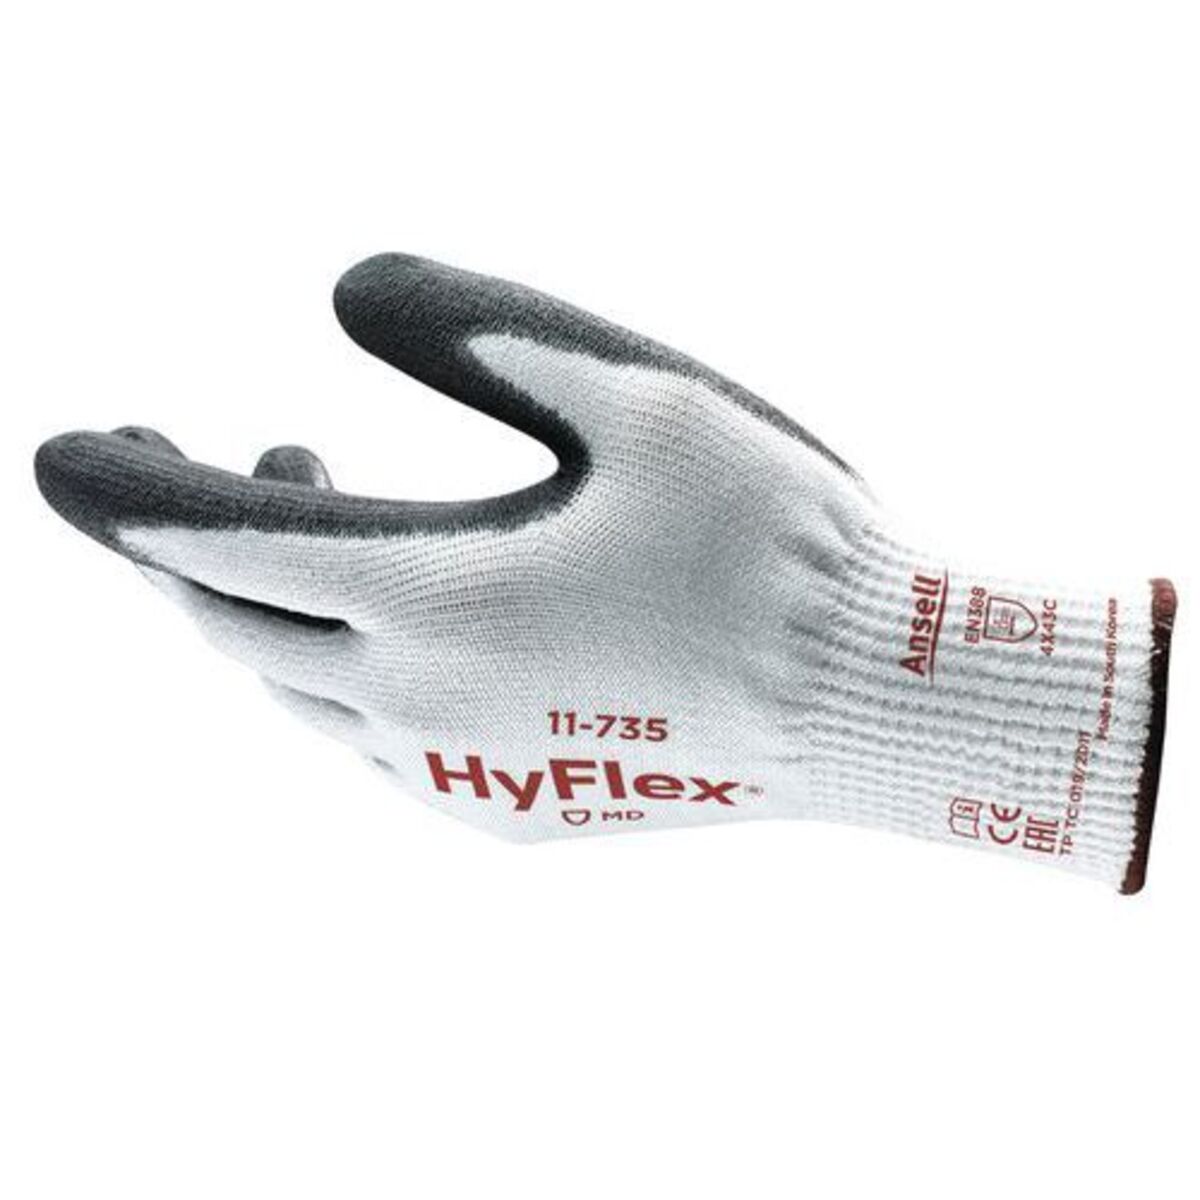 Gants anticoupures Hyflex® 11-735 Taille 10